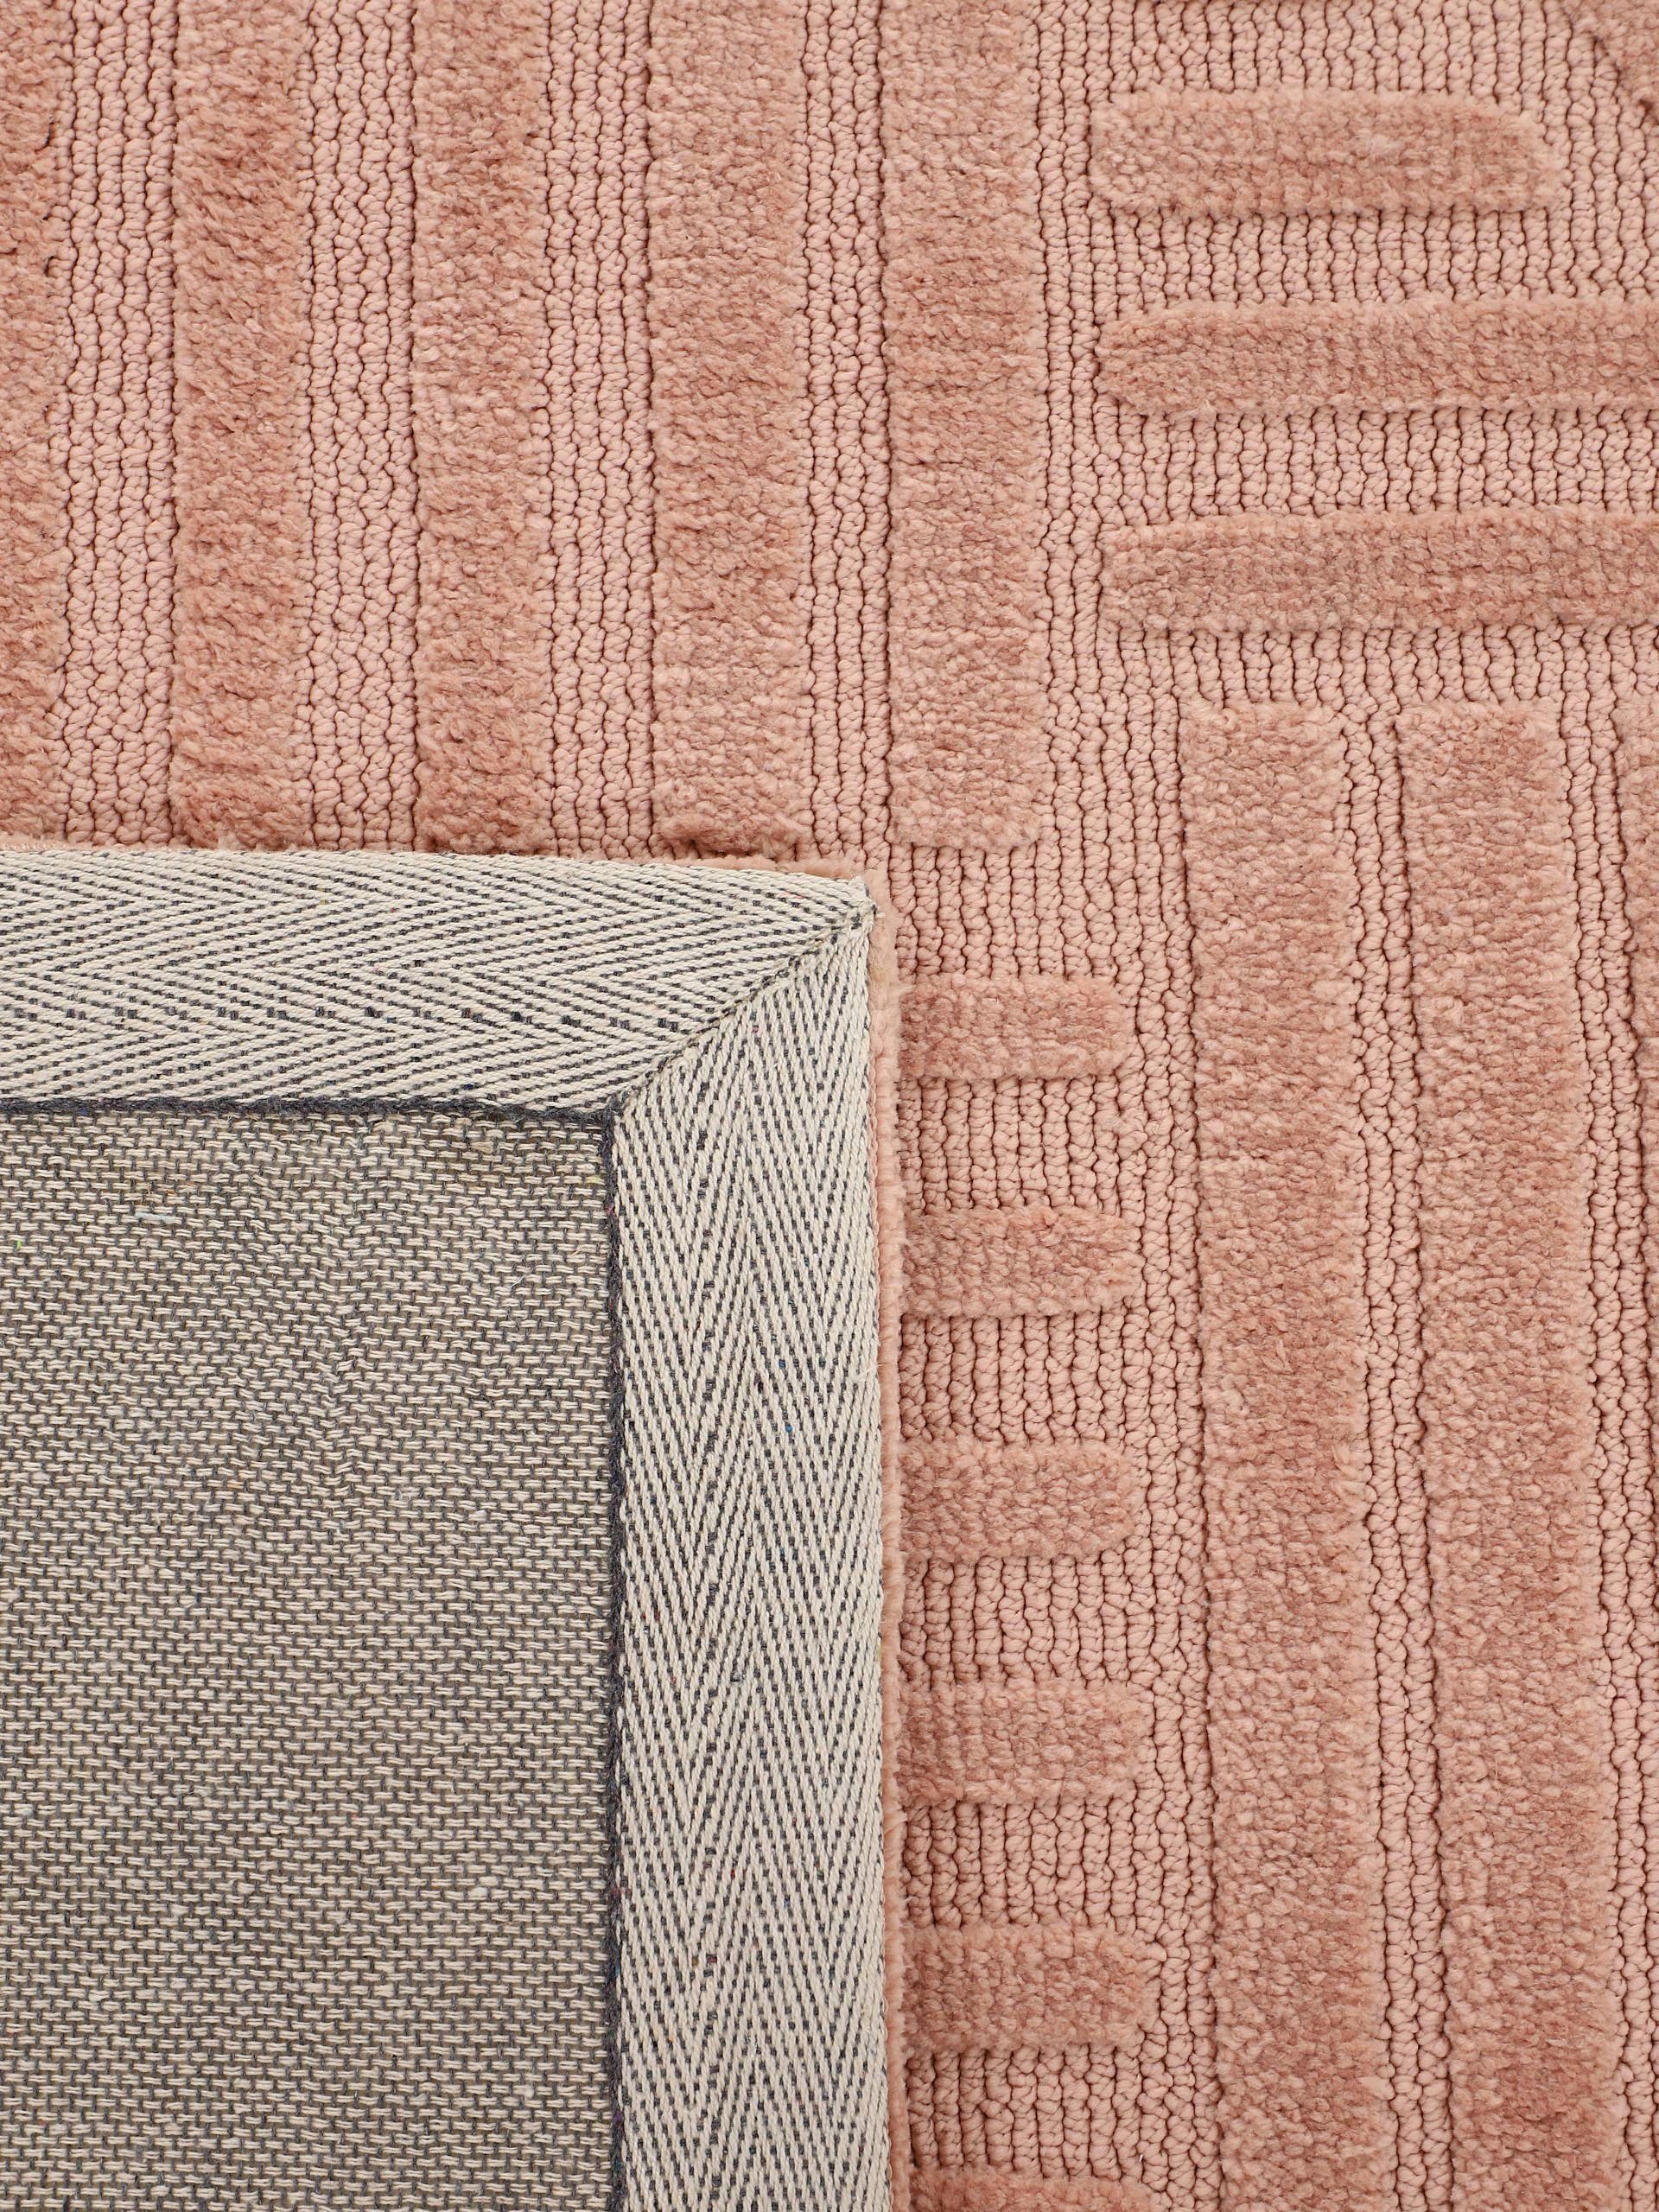 Touch rechteckig, Höhe: carpetfine, mm, Holly Boho 12 rosa Soft getuftete Teppich Hoch-Tief-Struktur, Scandi, Wohnzimmer 4 - dichte Microfaser Teppich, weiche